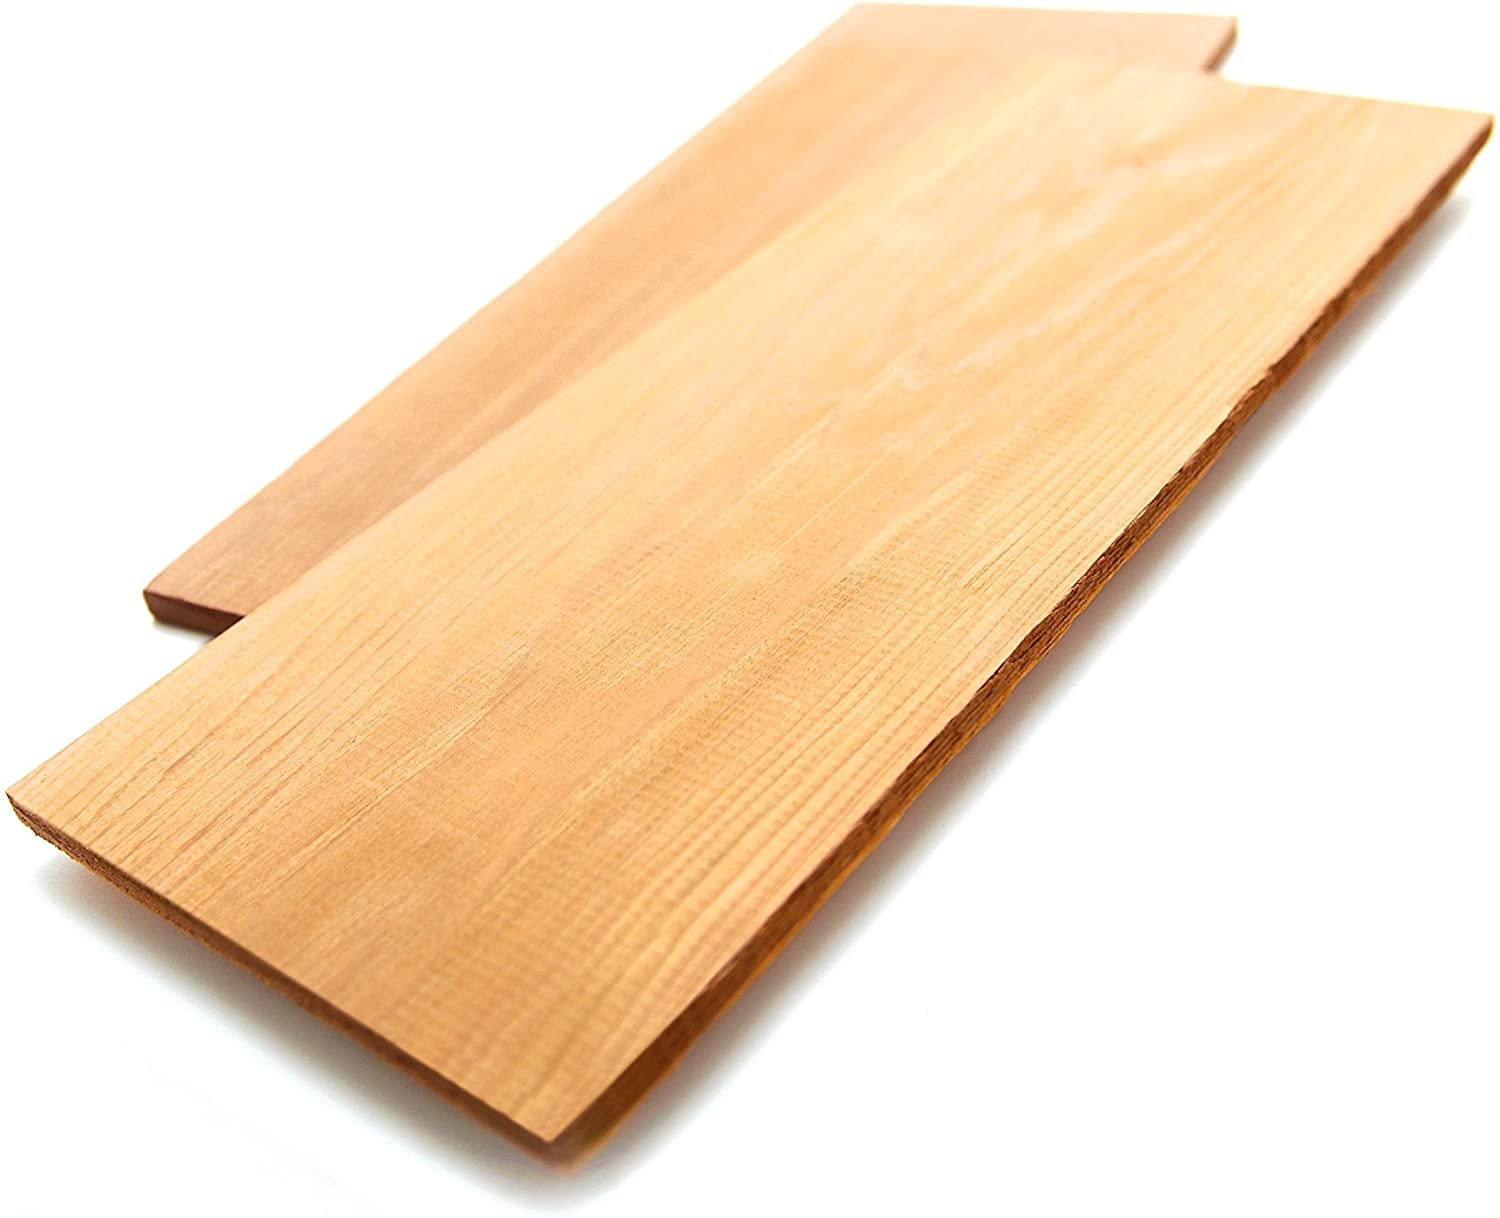 GrillPro 00285 Alder Grilling Planks - image 1 of 2